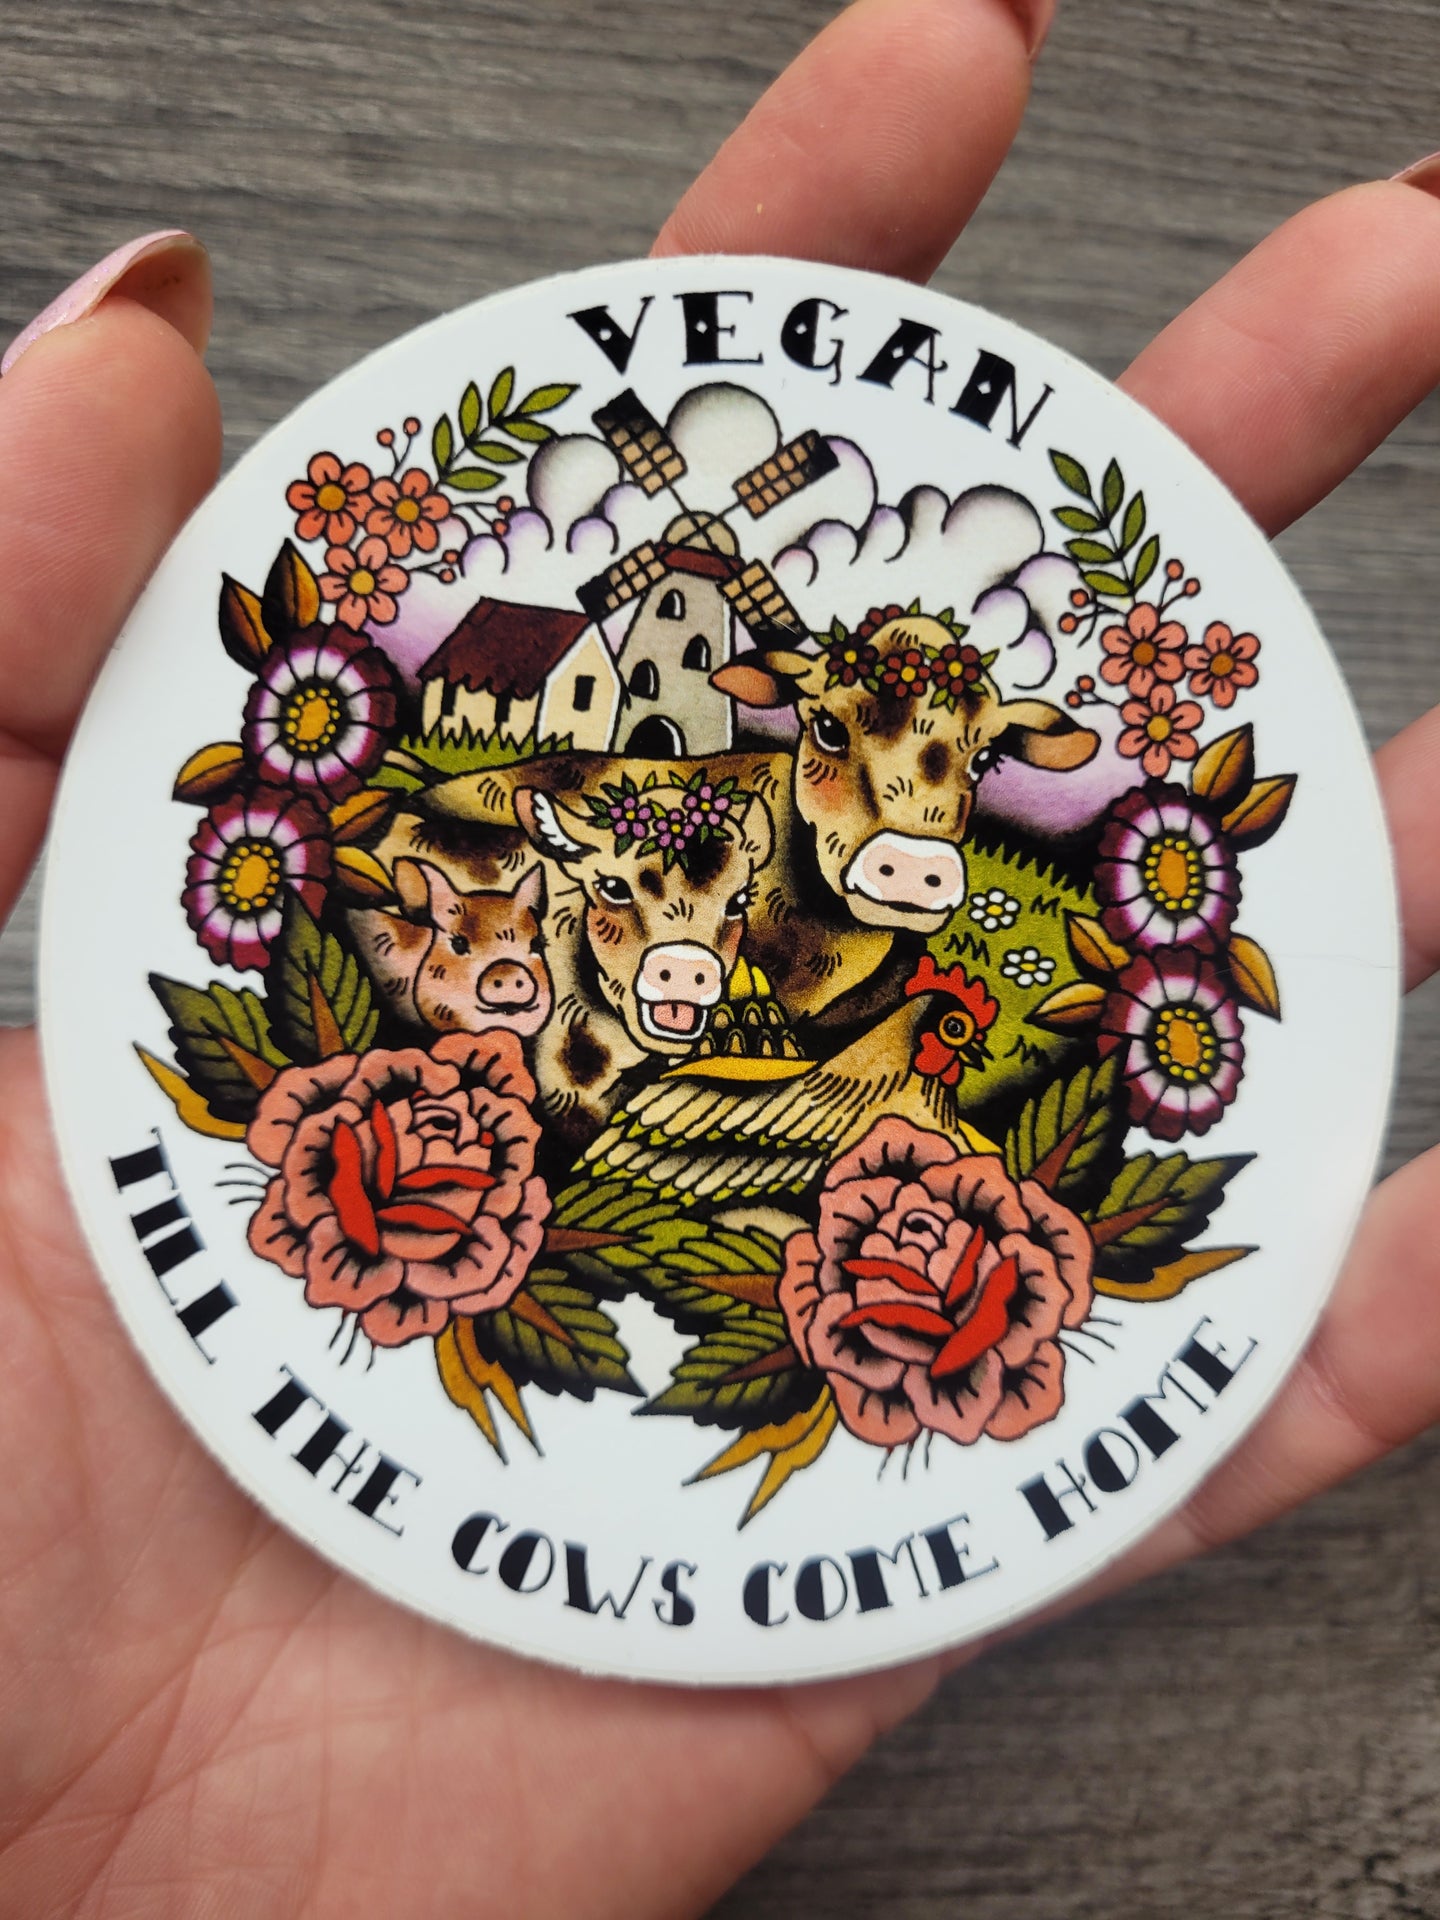 'Vegan Till The Cows Come Home' Vinyl Sticker